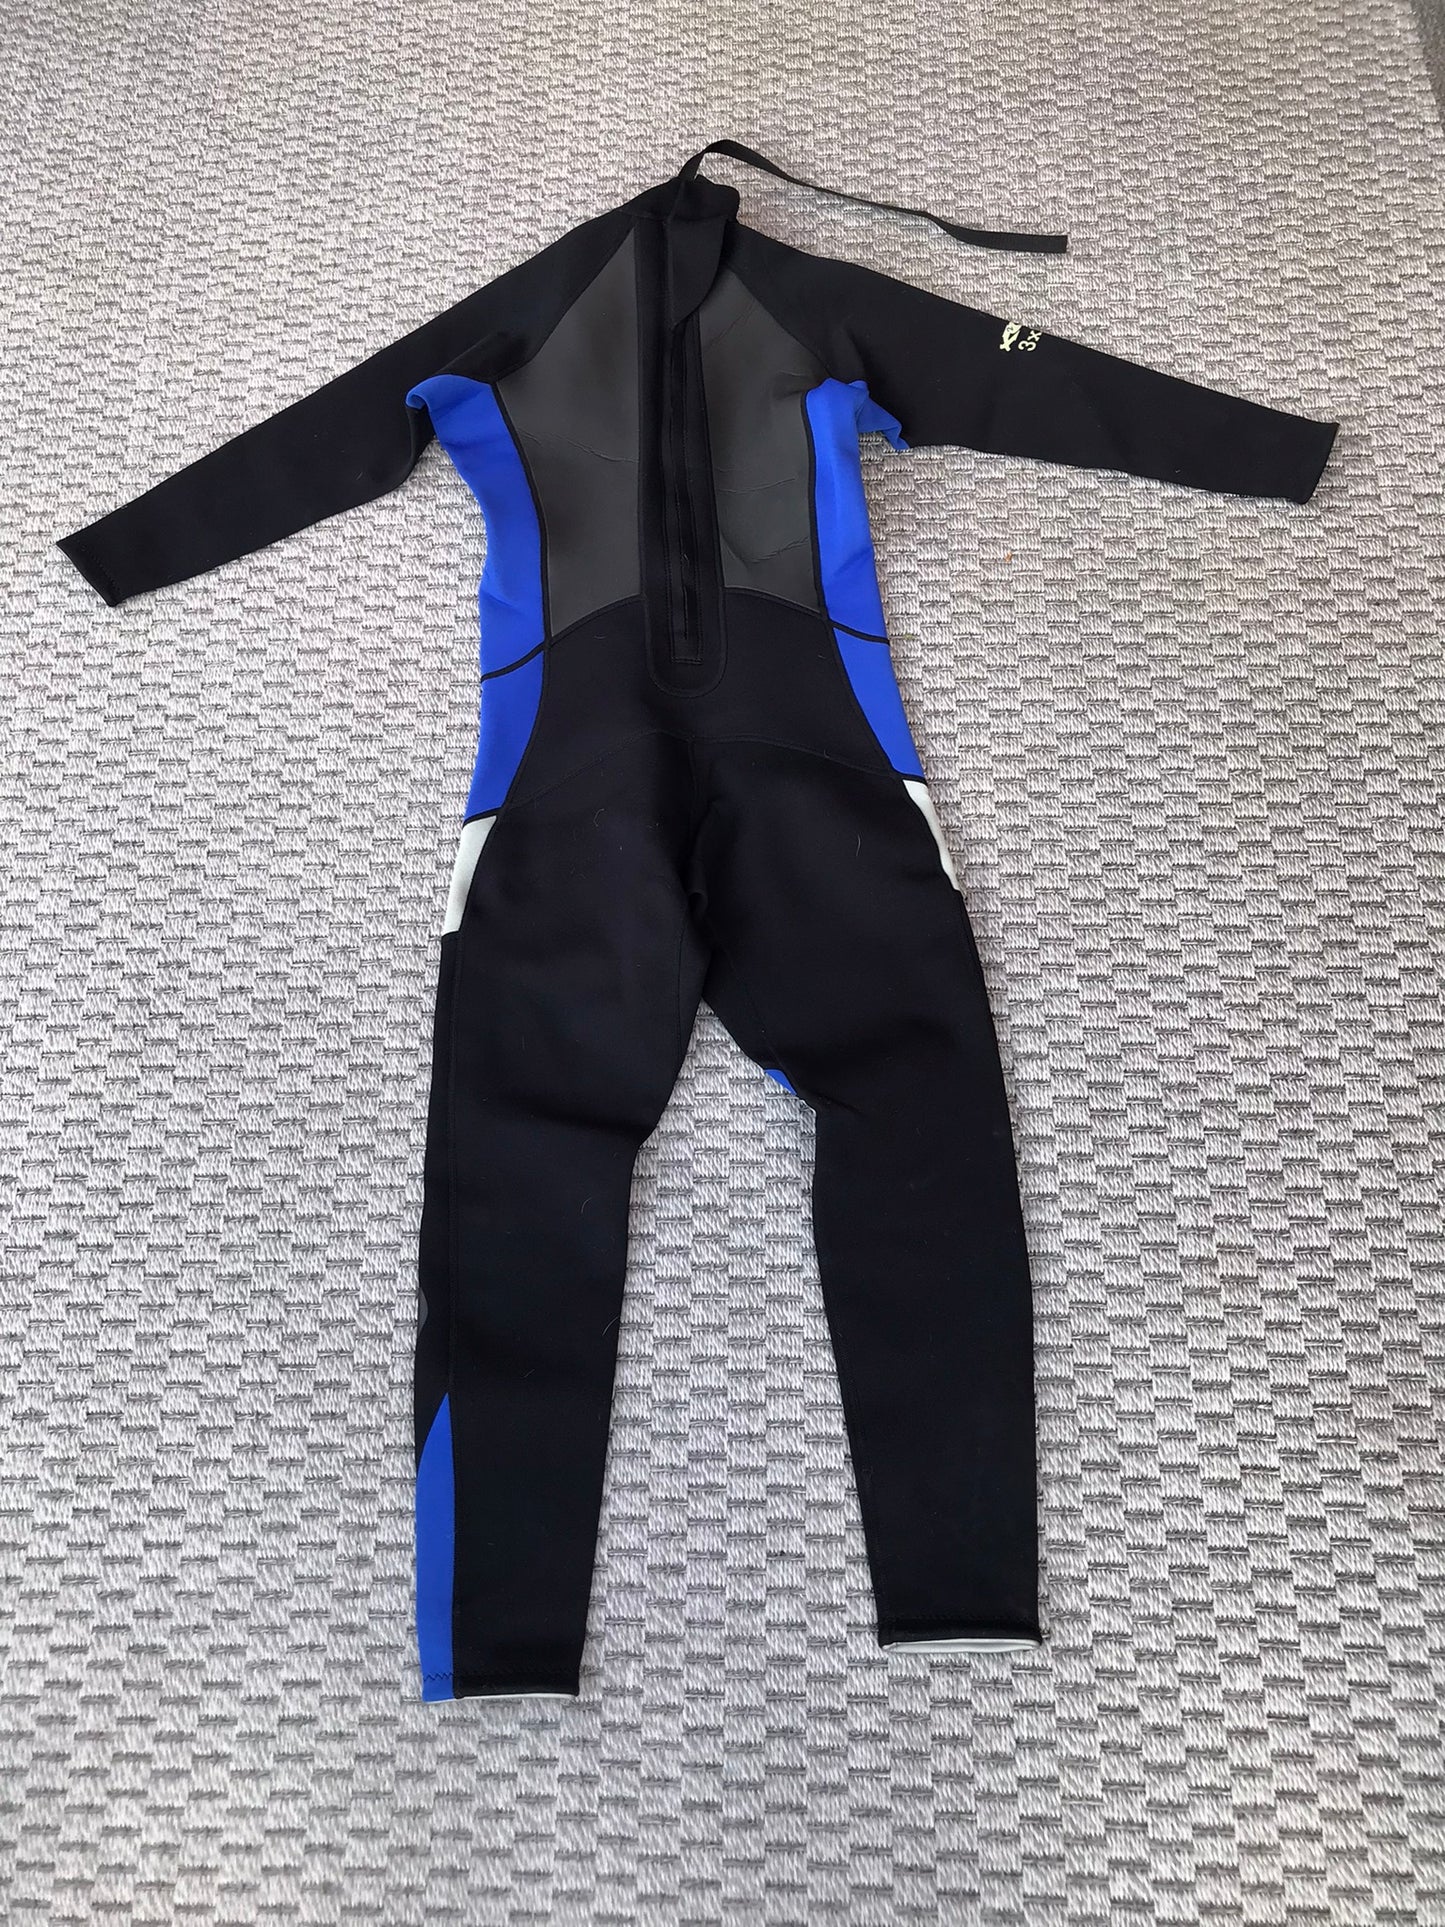 Wetsuit Full Size Men's Small 3-2 mm Black Blue Neoprene Like New